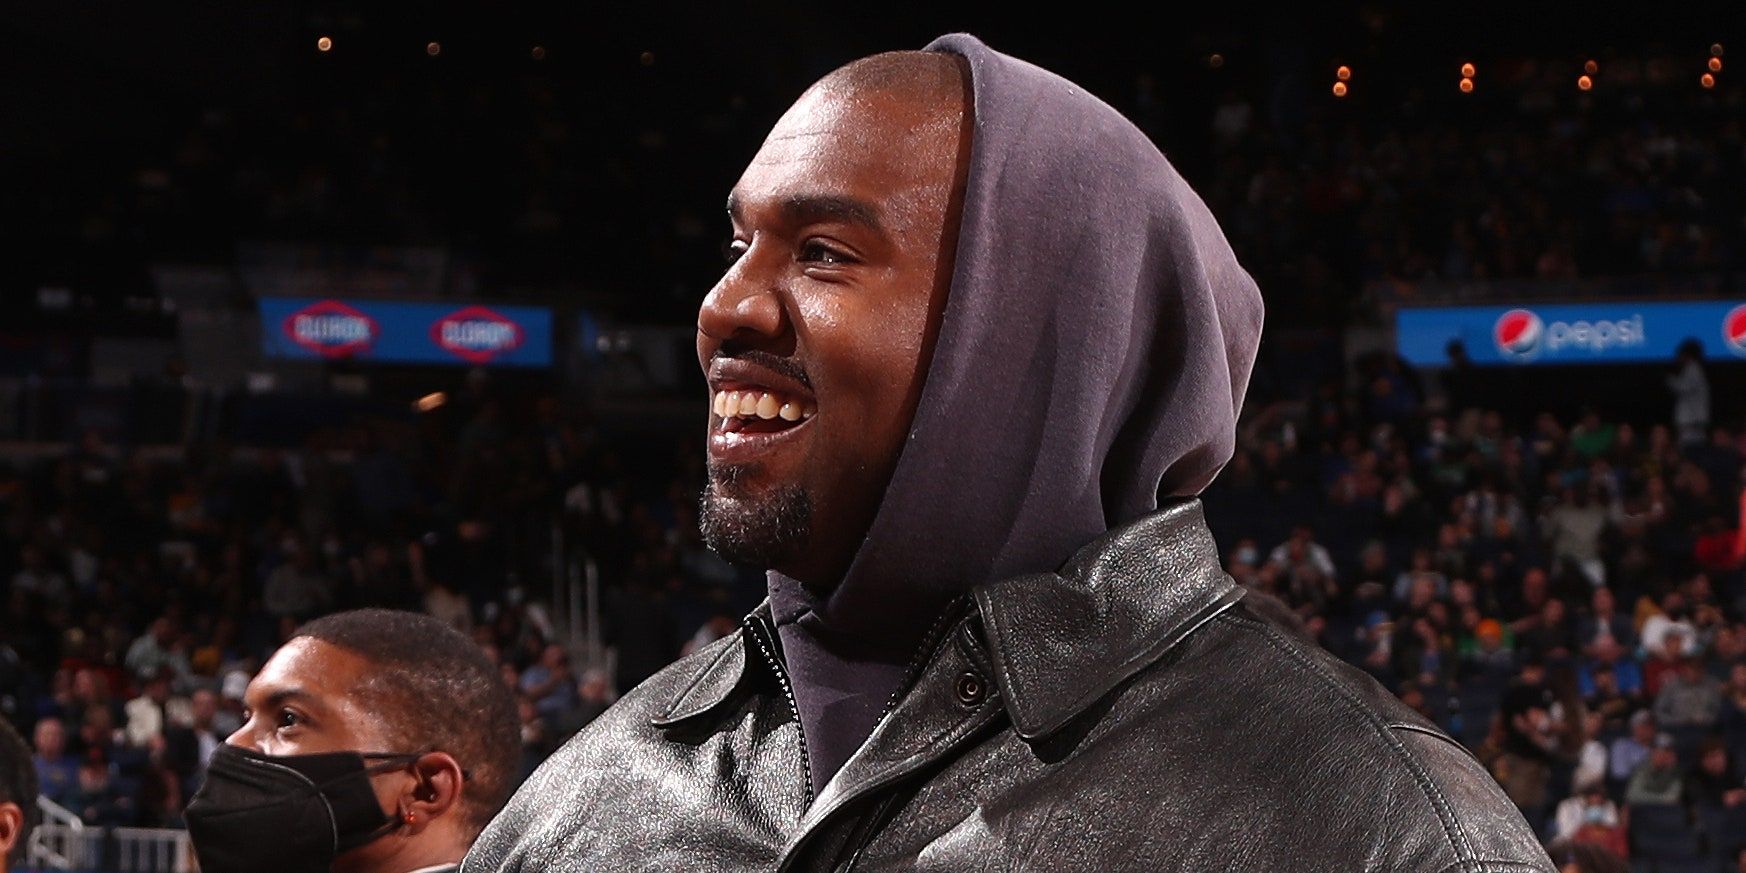 Se Confirma Fallecimiento De Kanye West